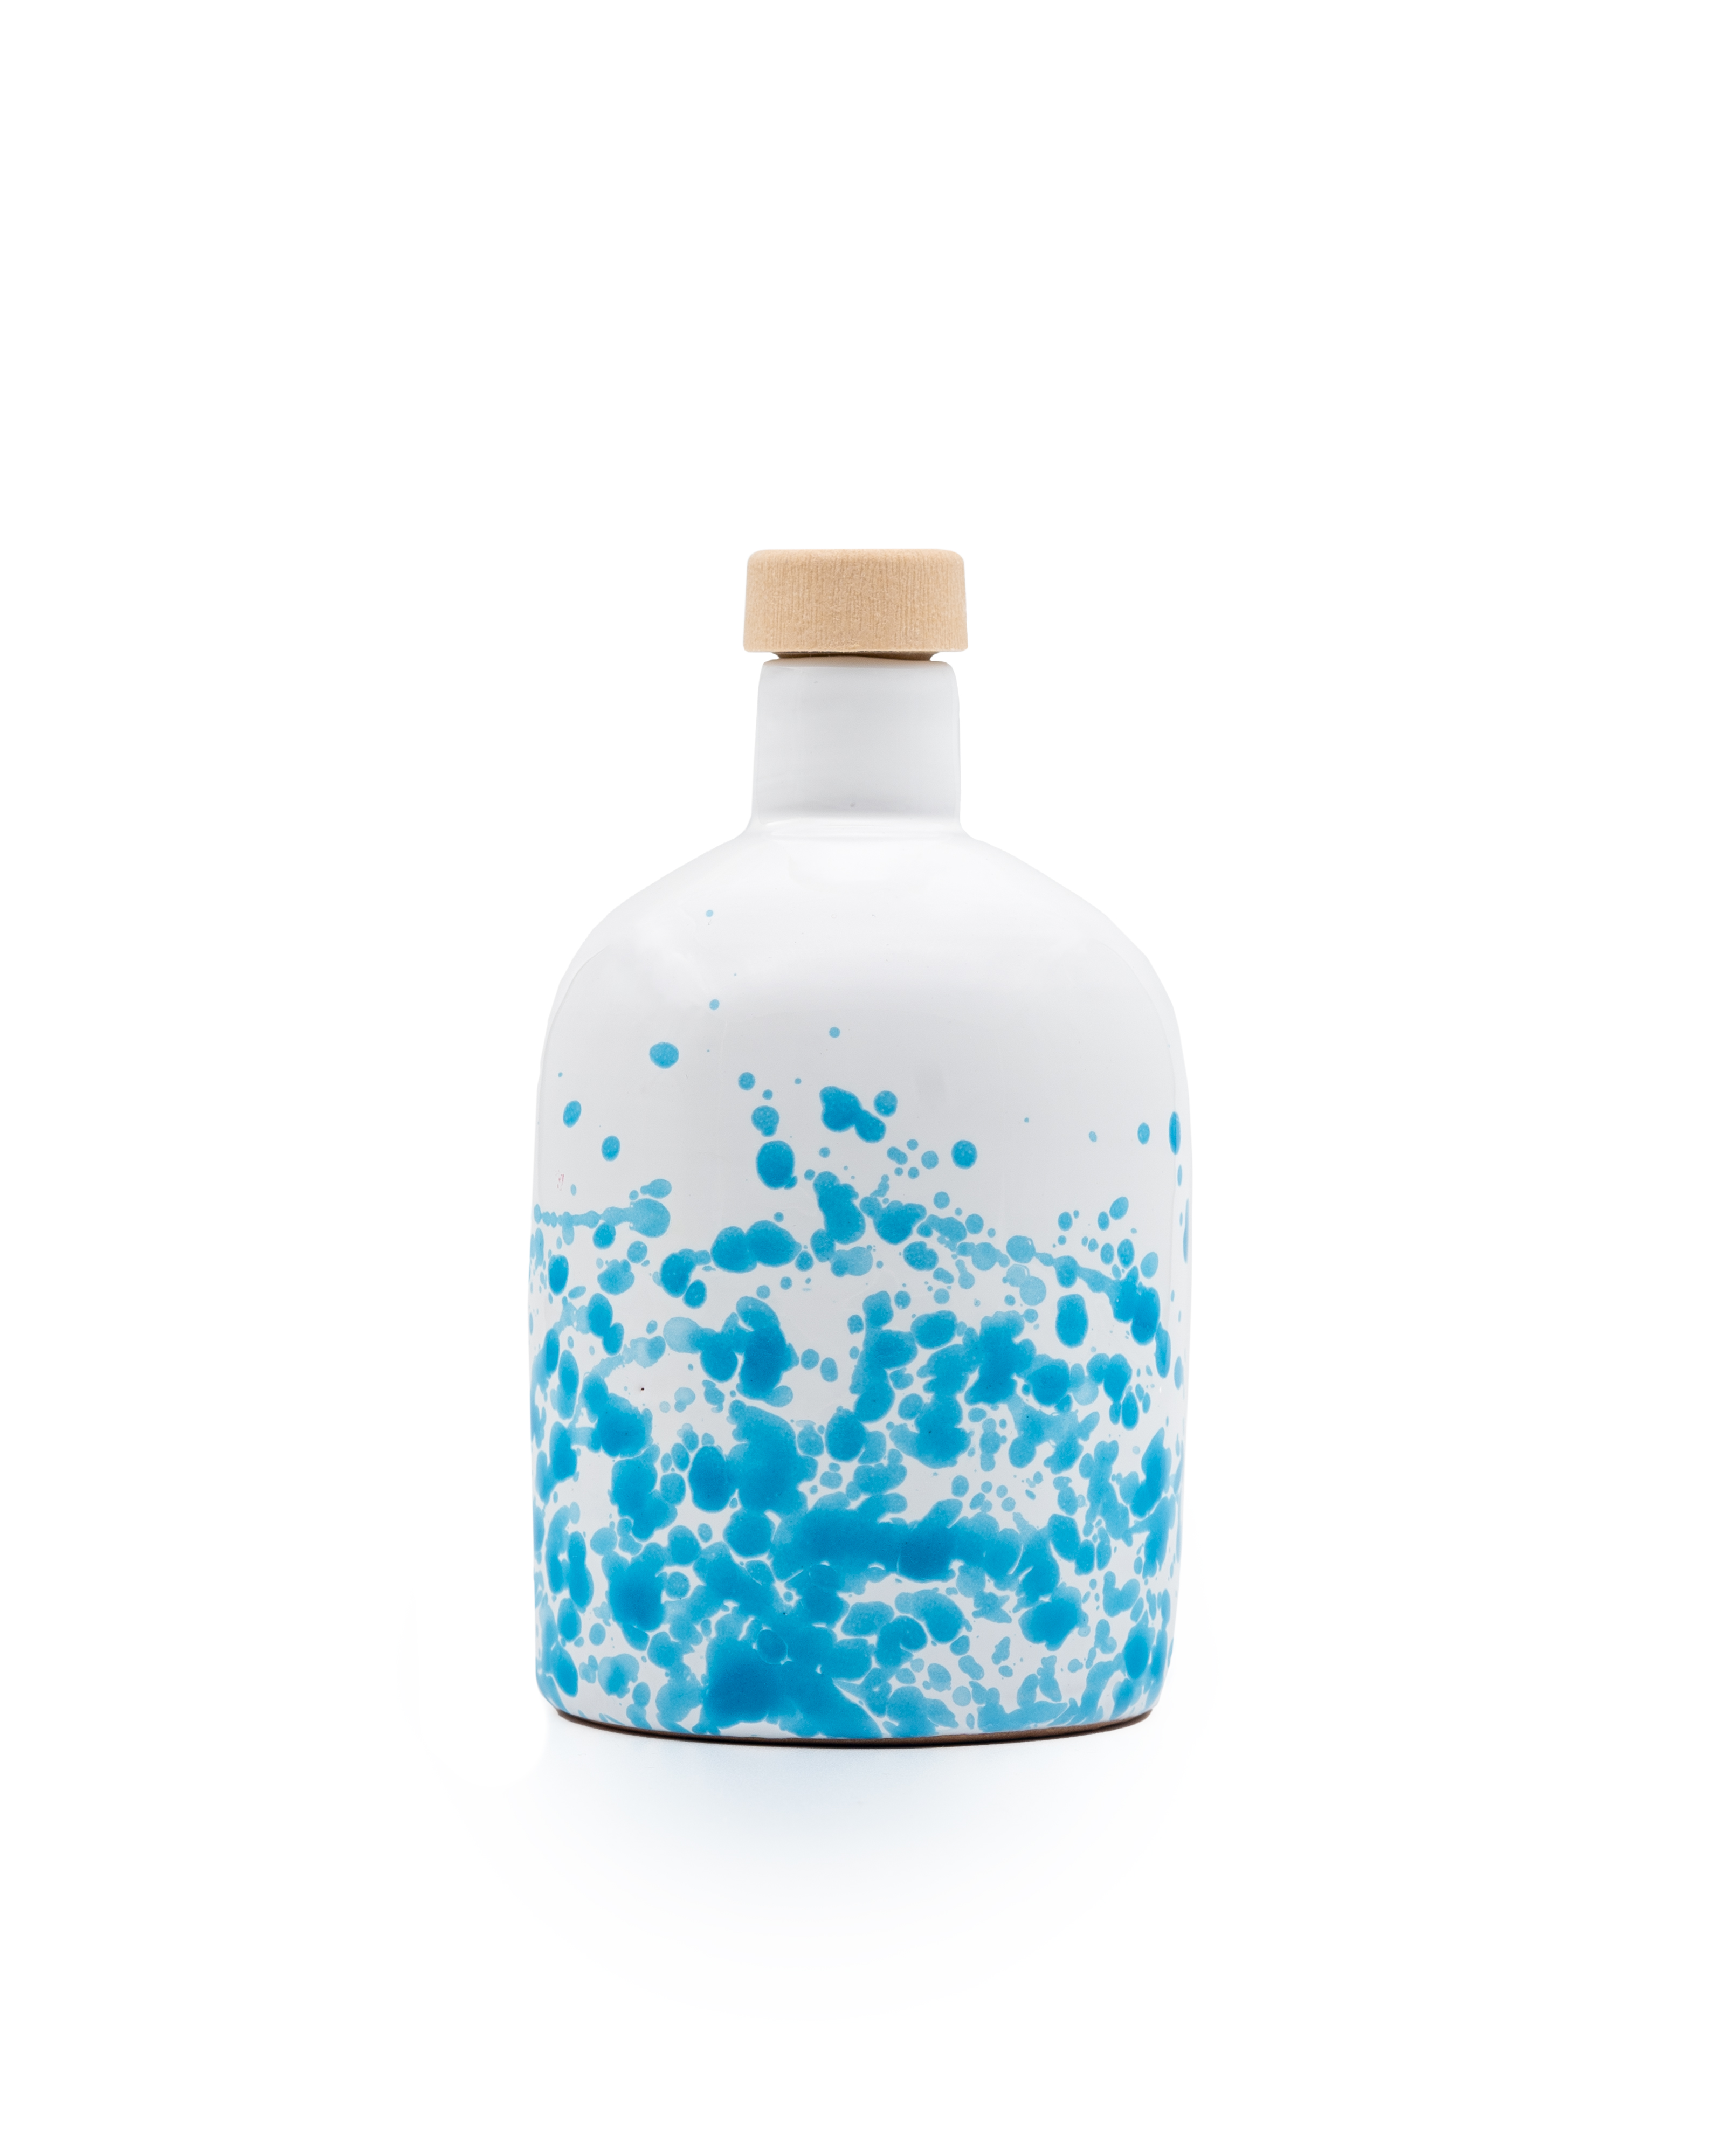 ALLEGRO native organic extra virgin olive oil, filtered, 250ml blue ceramic bottle.